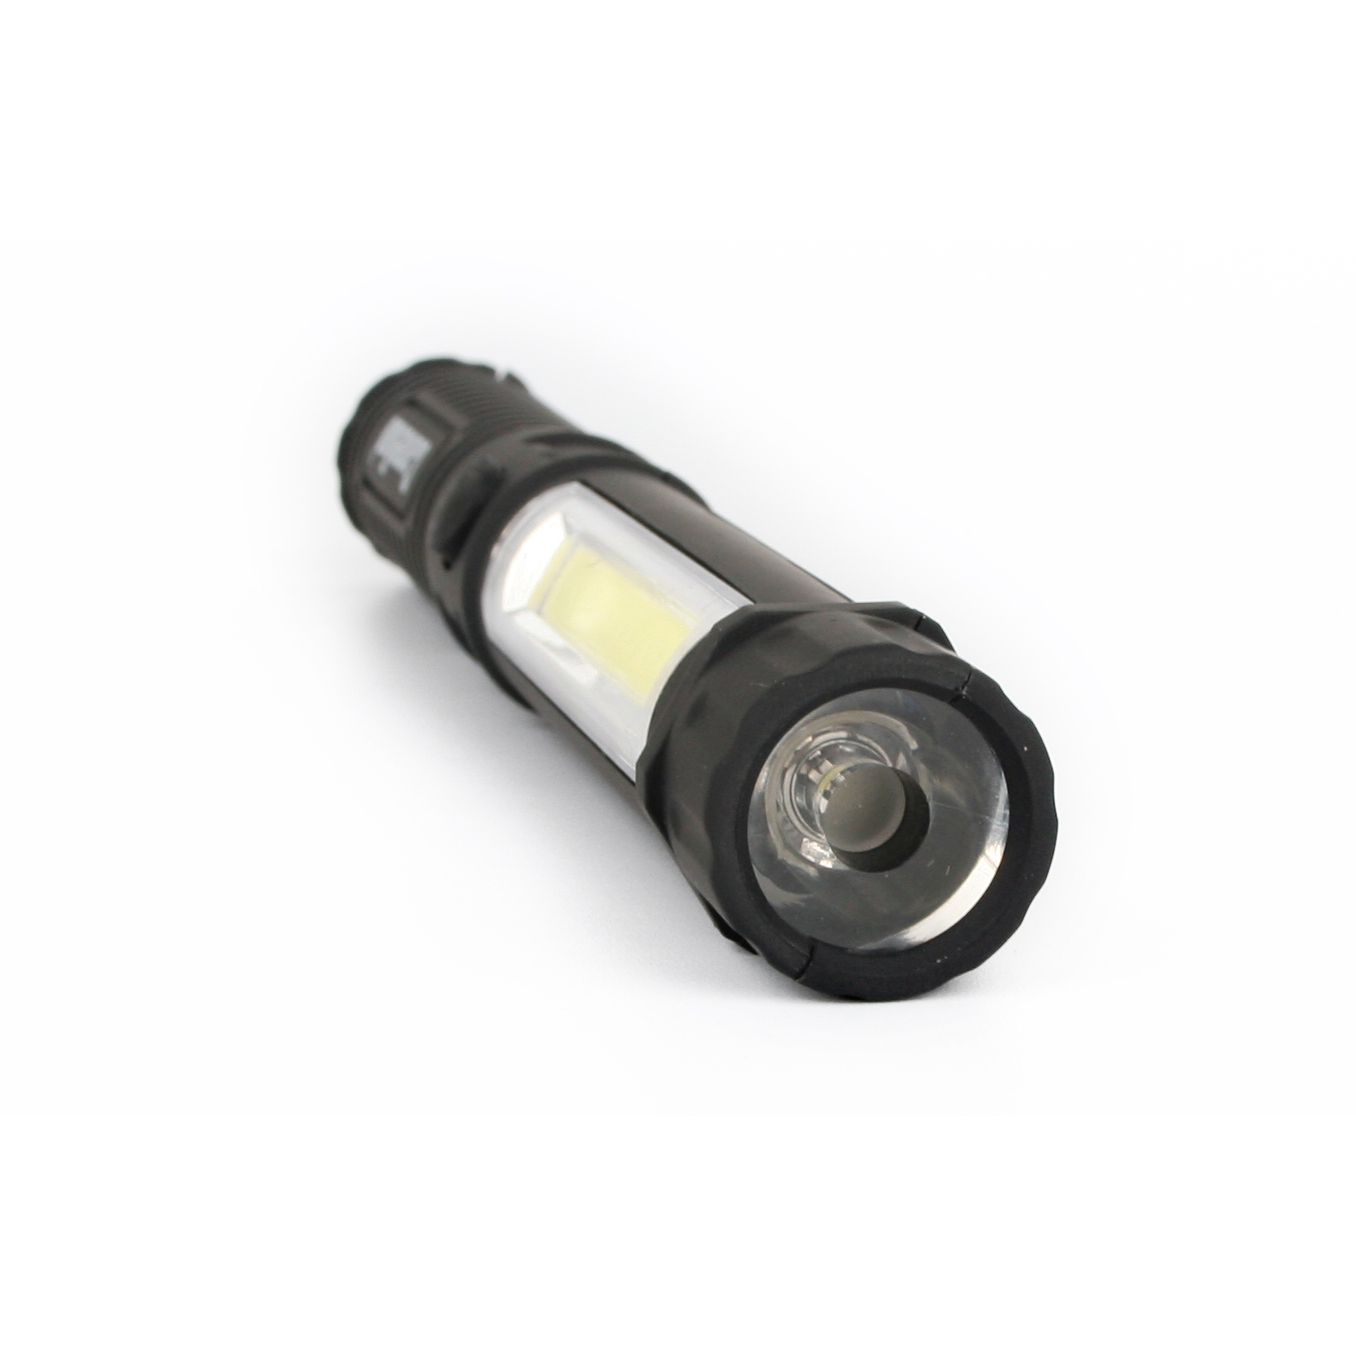 Сamelion LED51521 (фонарь-ручка, COB LED+1W LED, 3XR03, пластик, магнит, клипса, блистер)